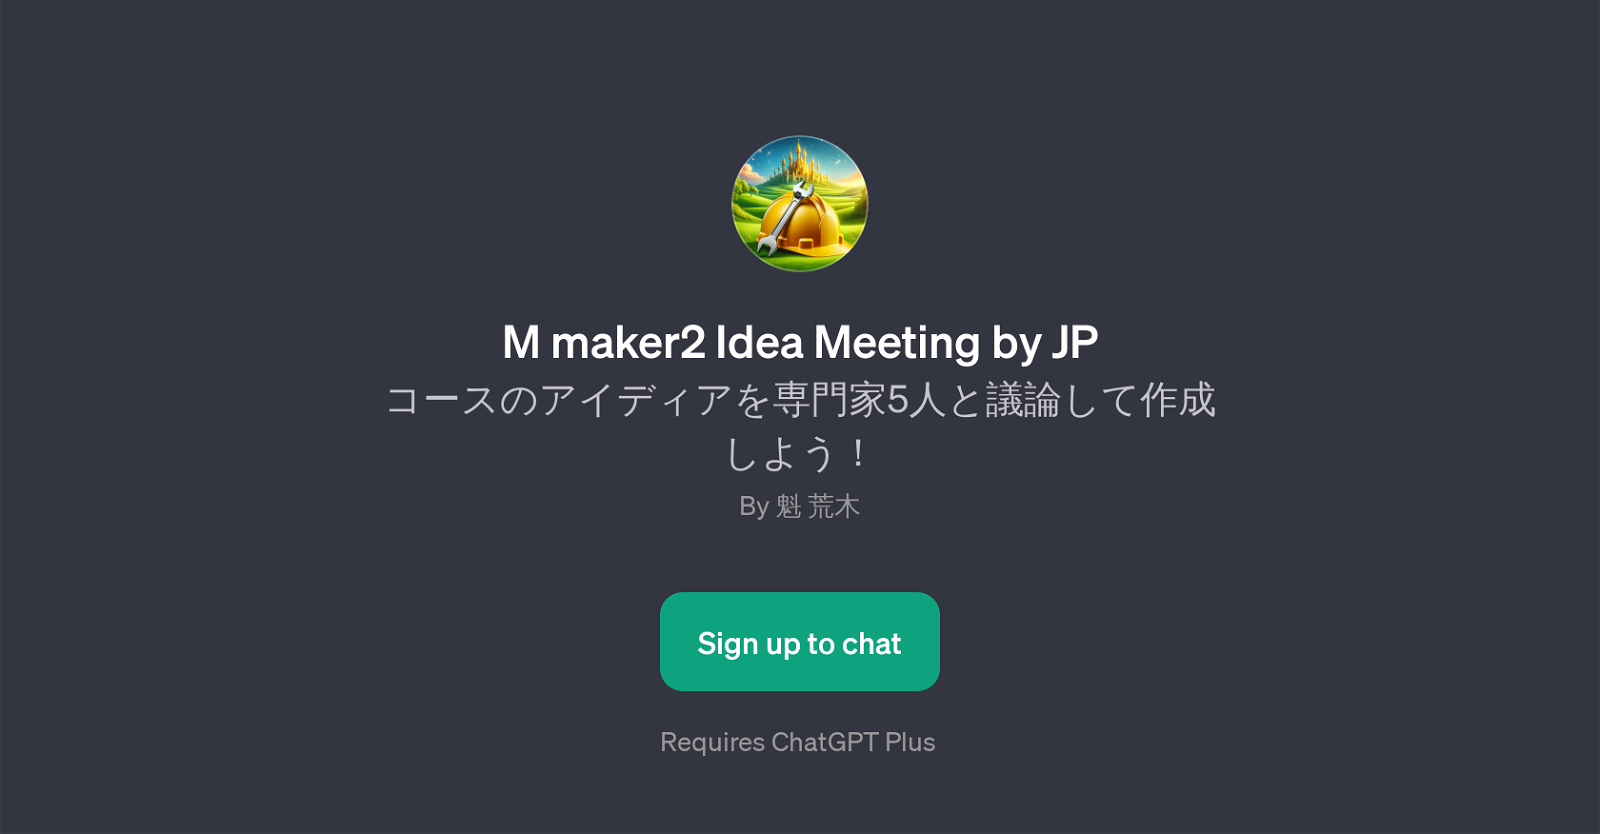 M maker2 Idea Meeting by JP website